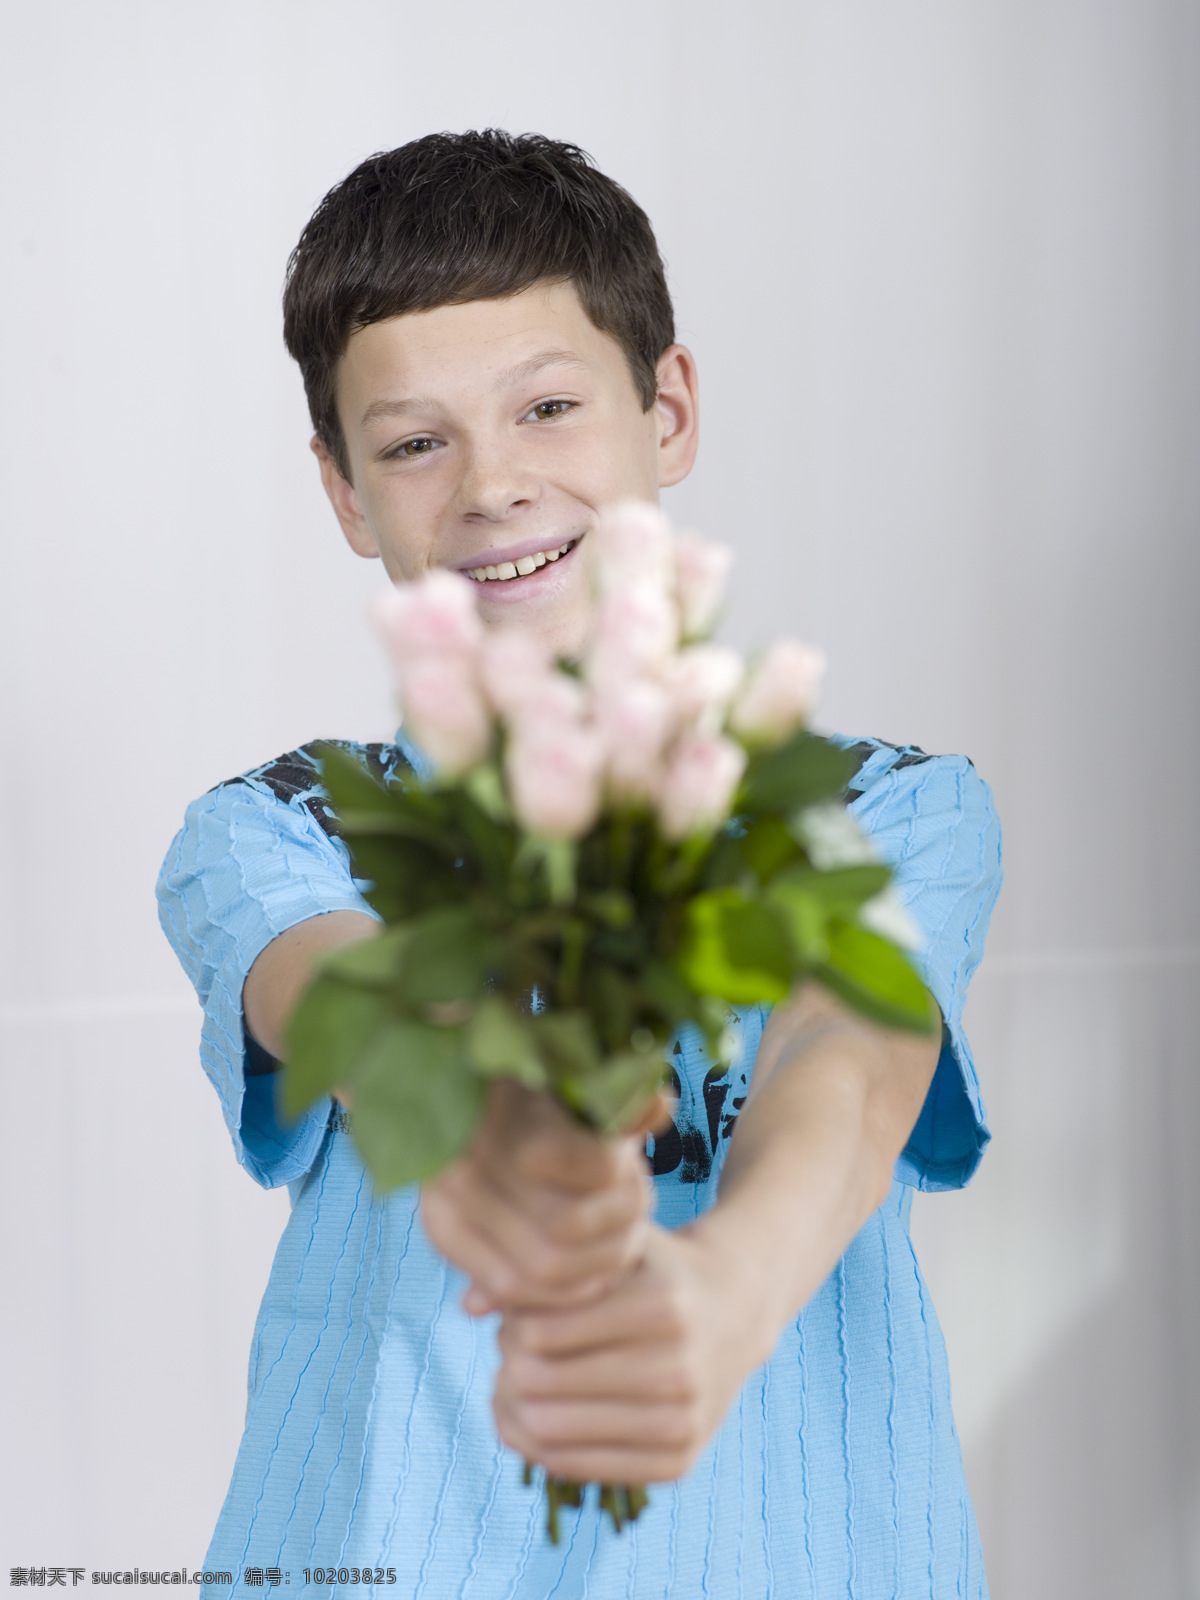 送 玫瑰 青年 男孩 时尚青年 青年男生 阳光男孩 帅哥 玫瑰花 送花 送玫瑰 情人节 生活人物 人物图片